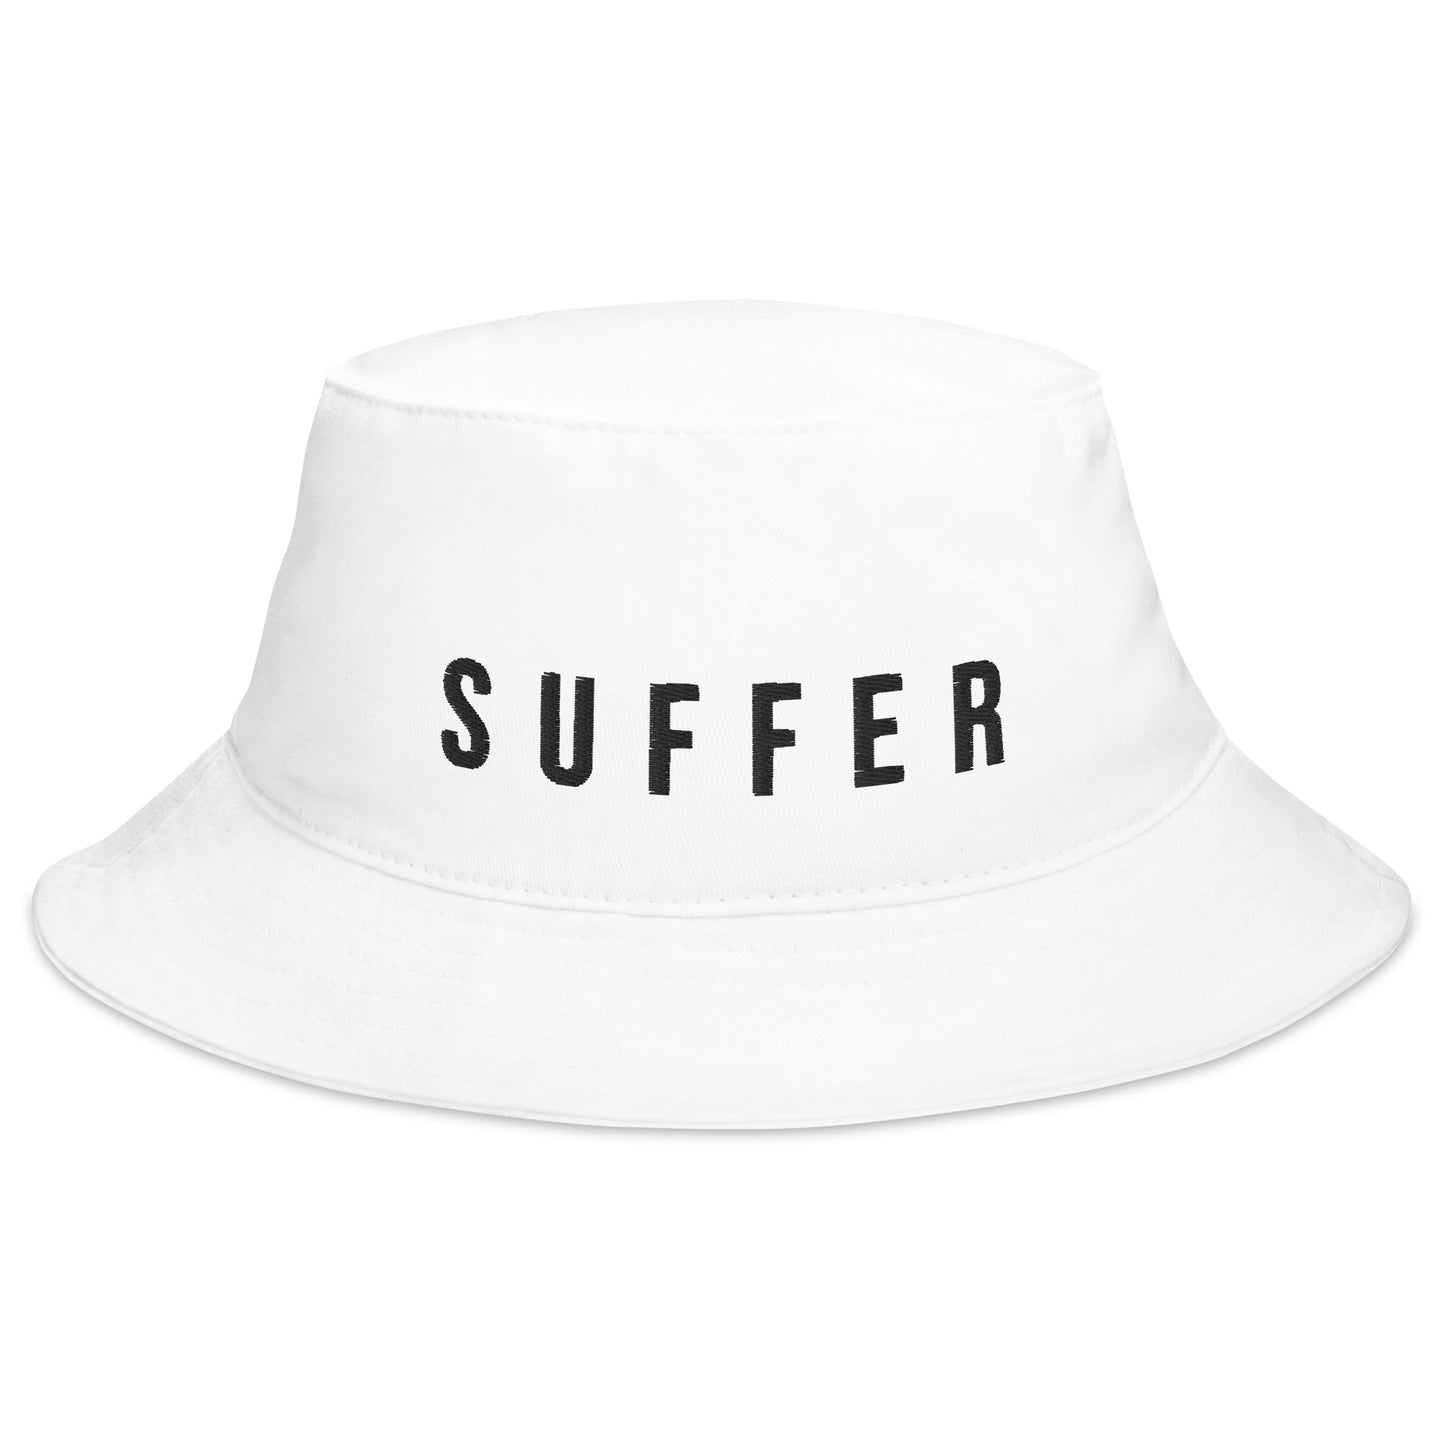 S U F F E R BLK Bucket Hat